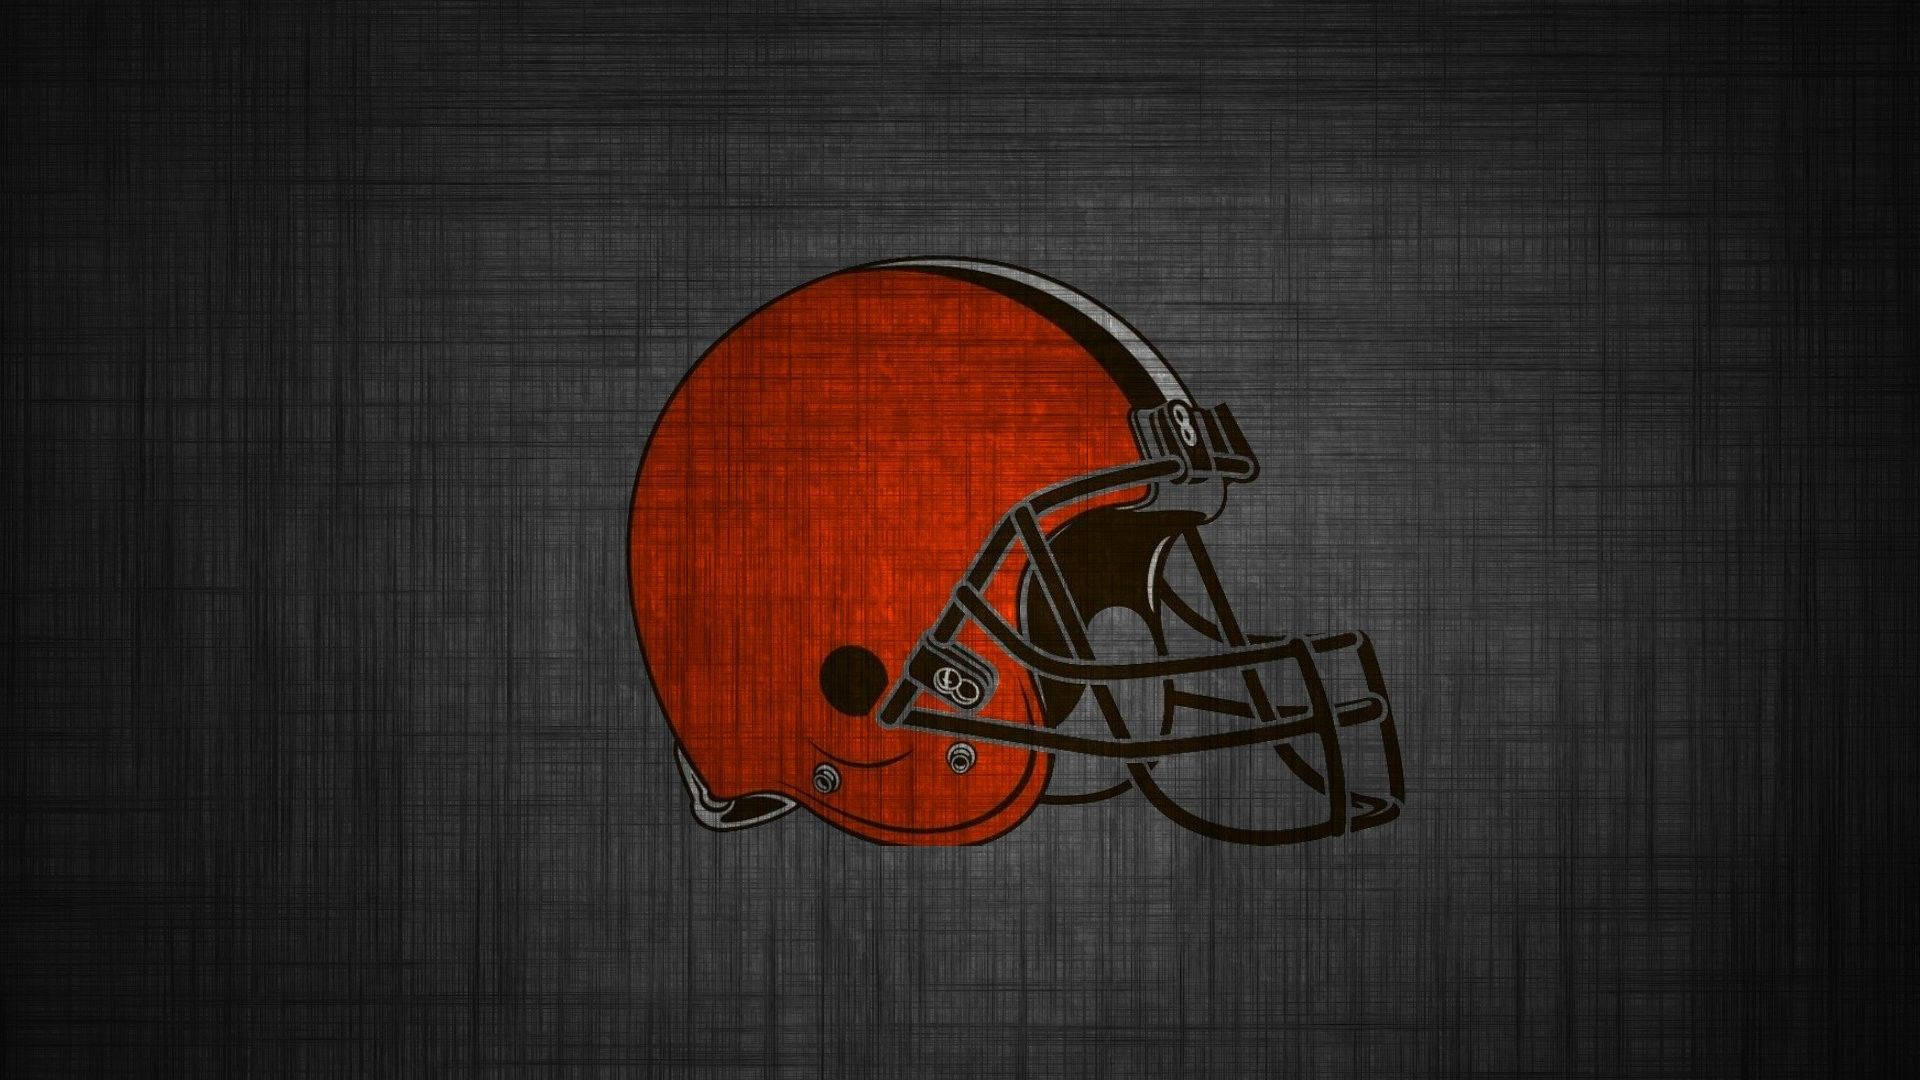 Sinister Cleveland Browns Logo